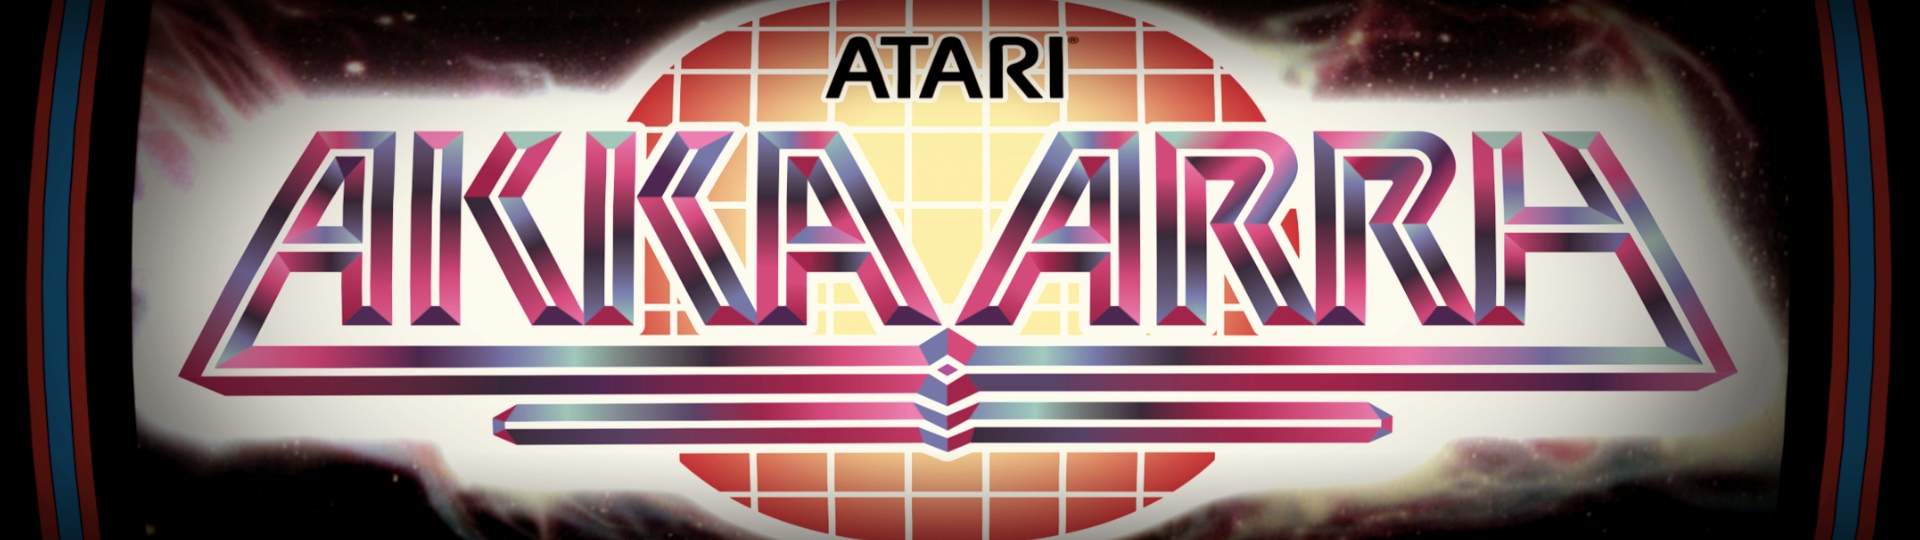 Akka Arrh [1982] - IGN